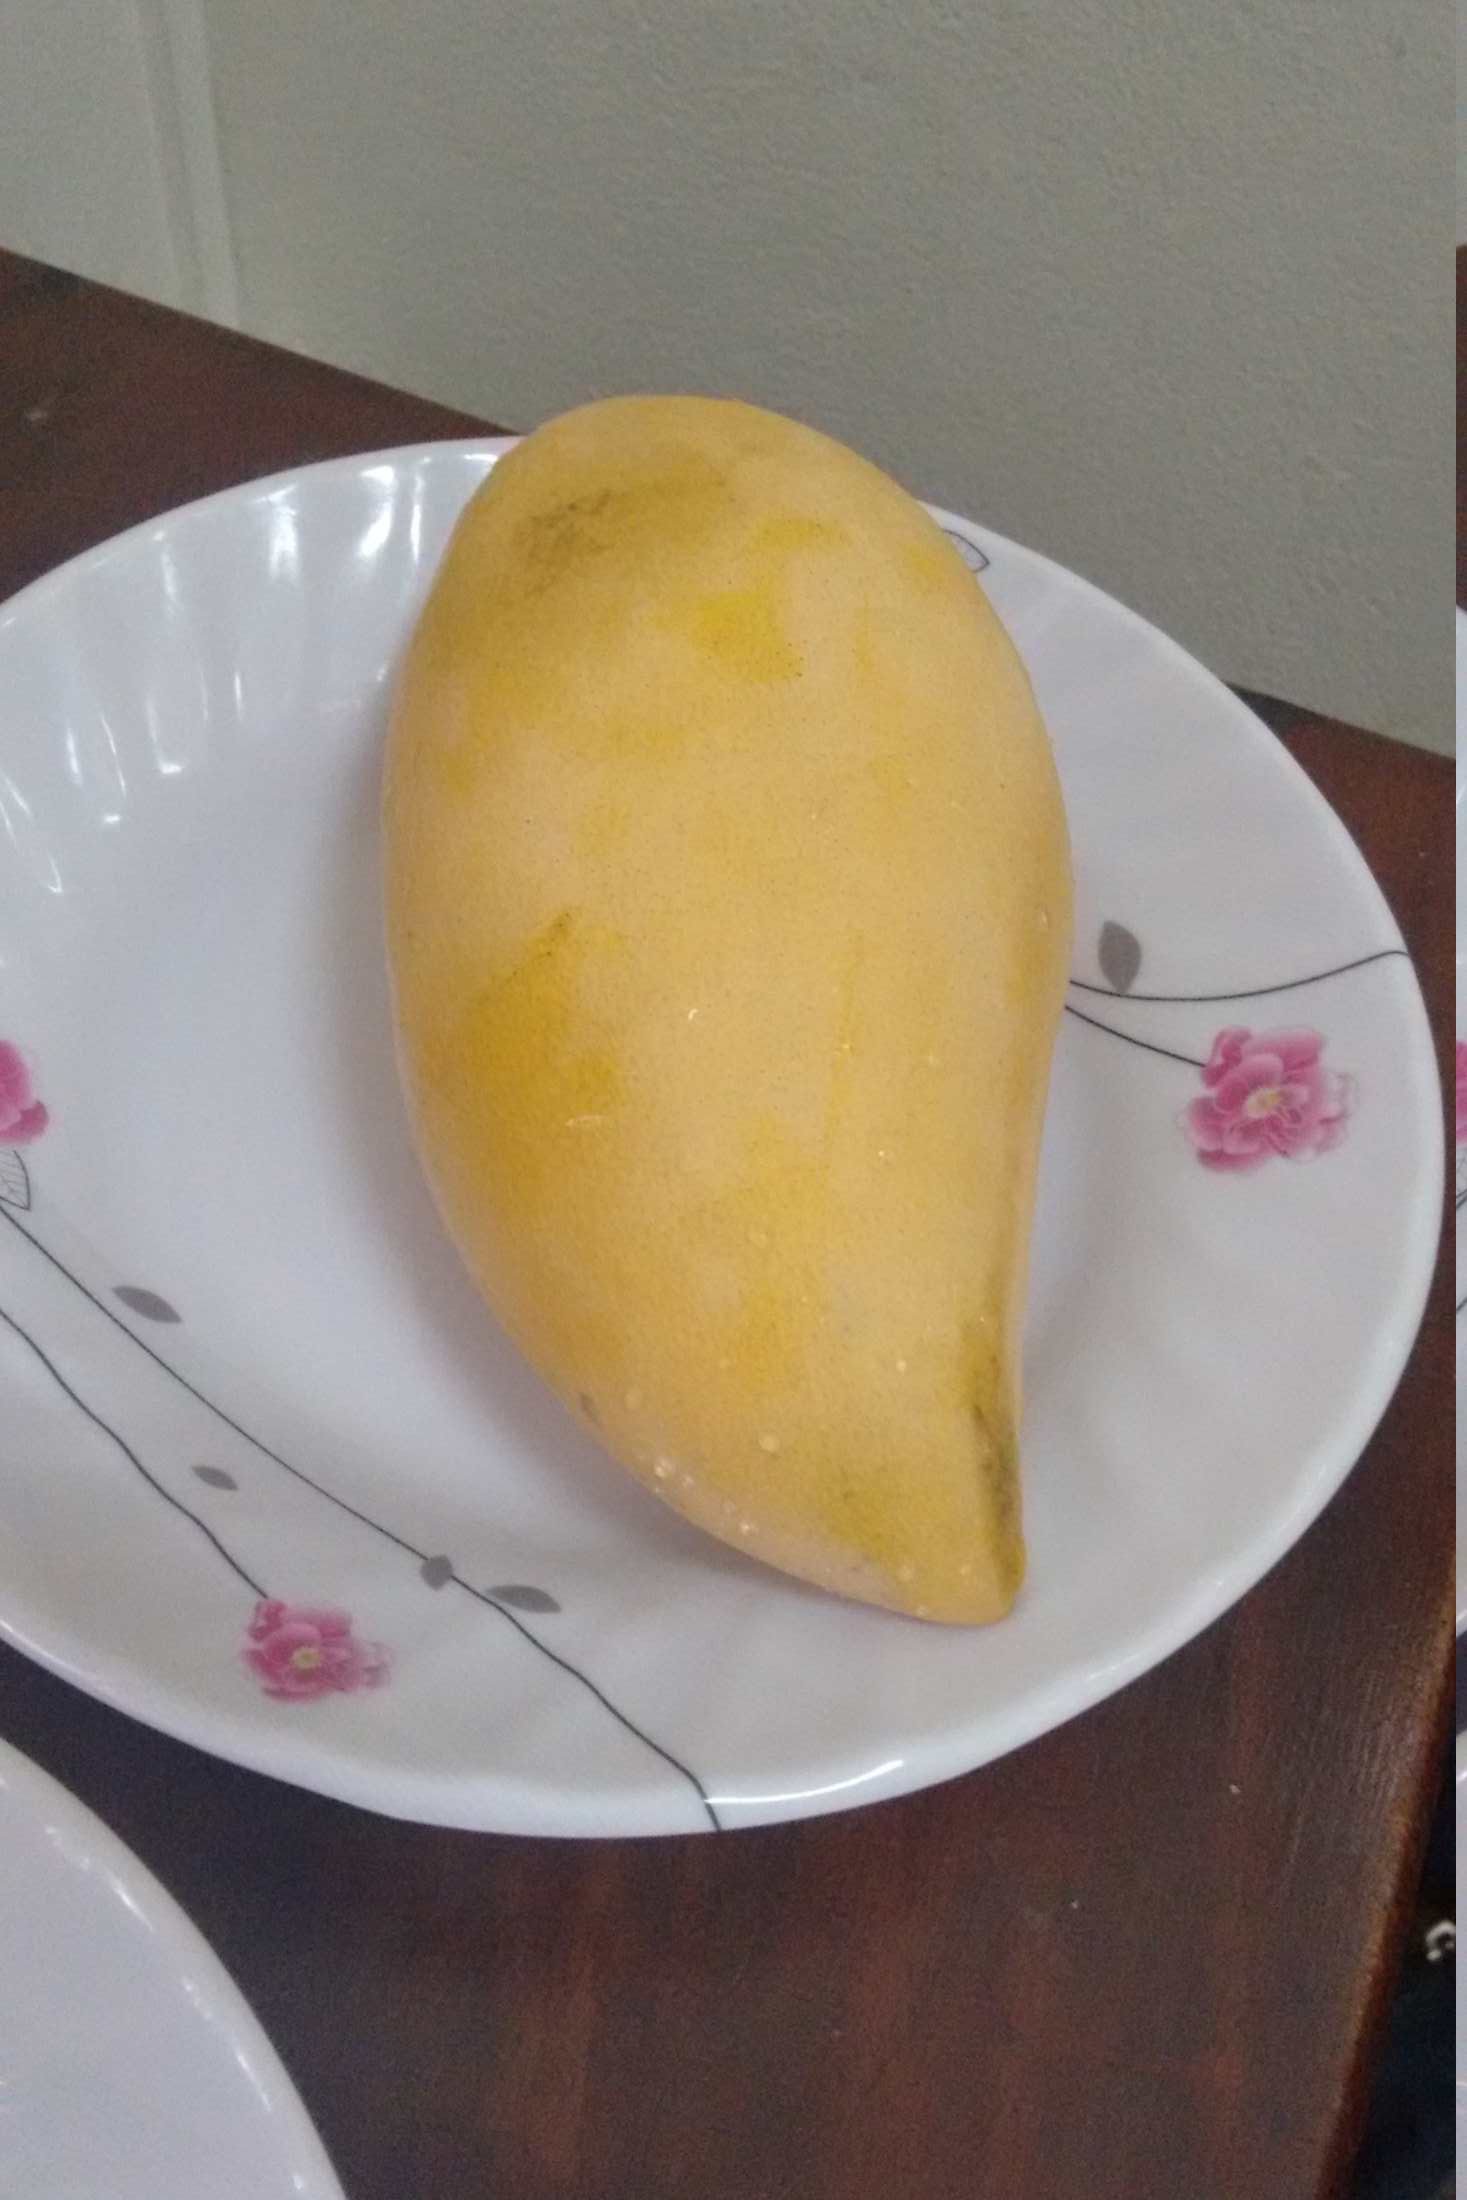 Ogromne mango to standard w całej azji, różnią się kolorem skórki oraz oczywiście smakiem